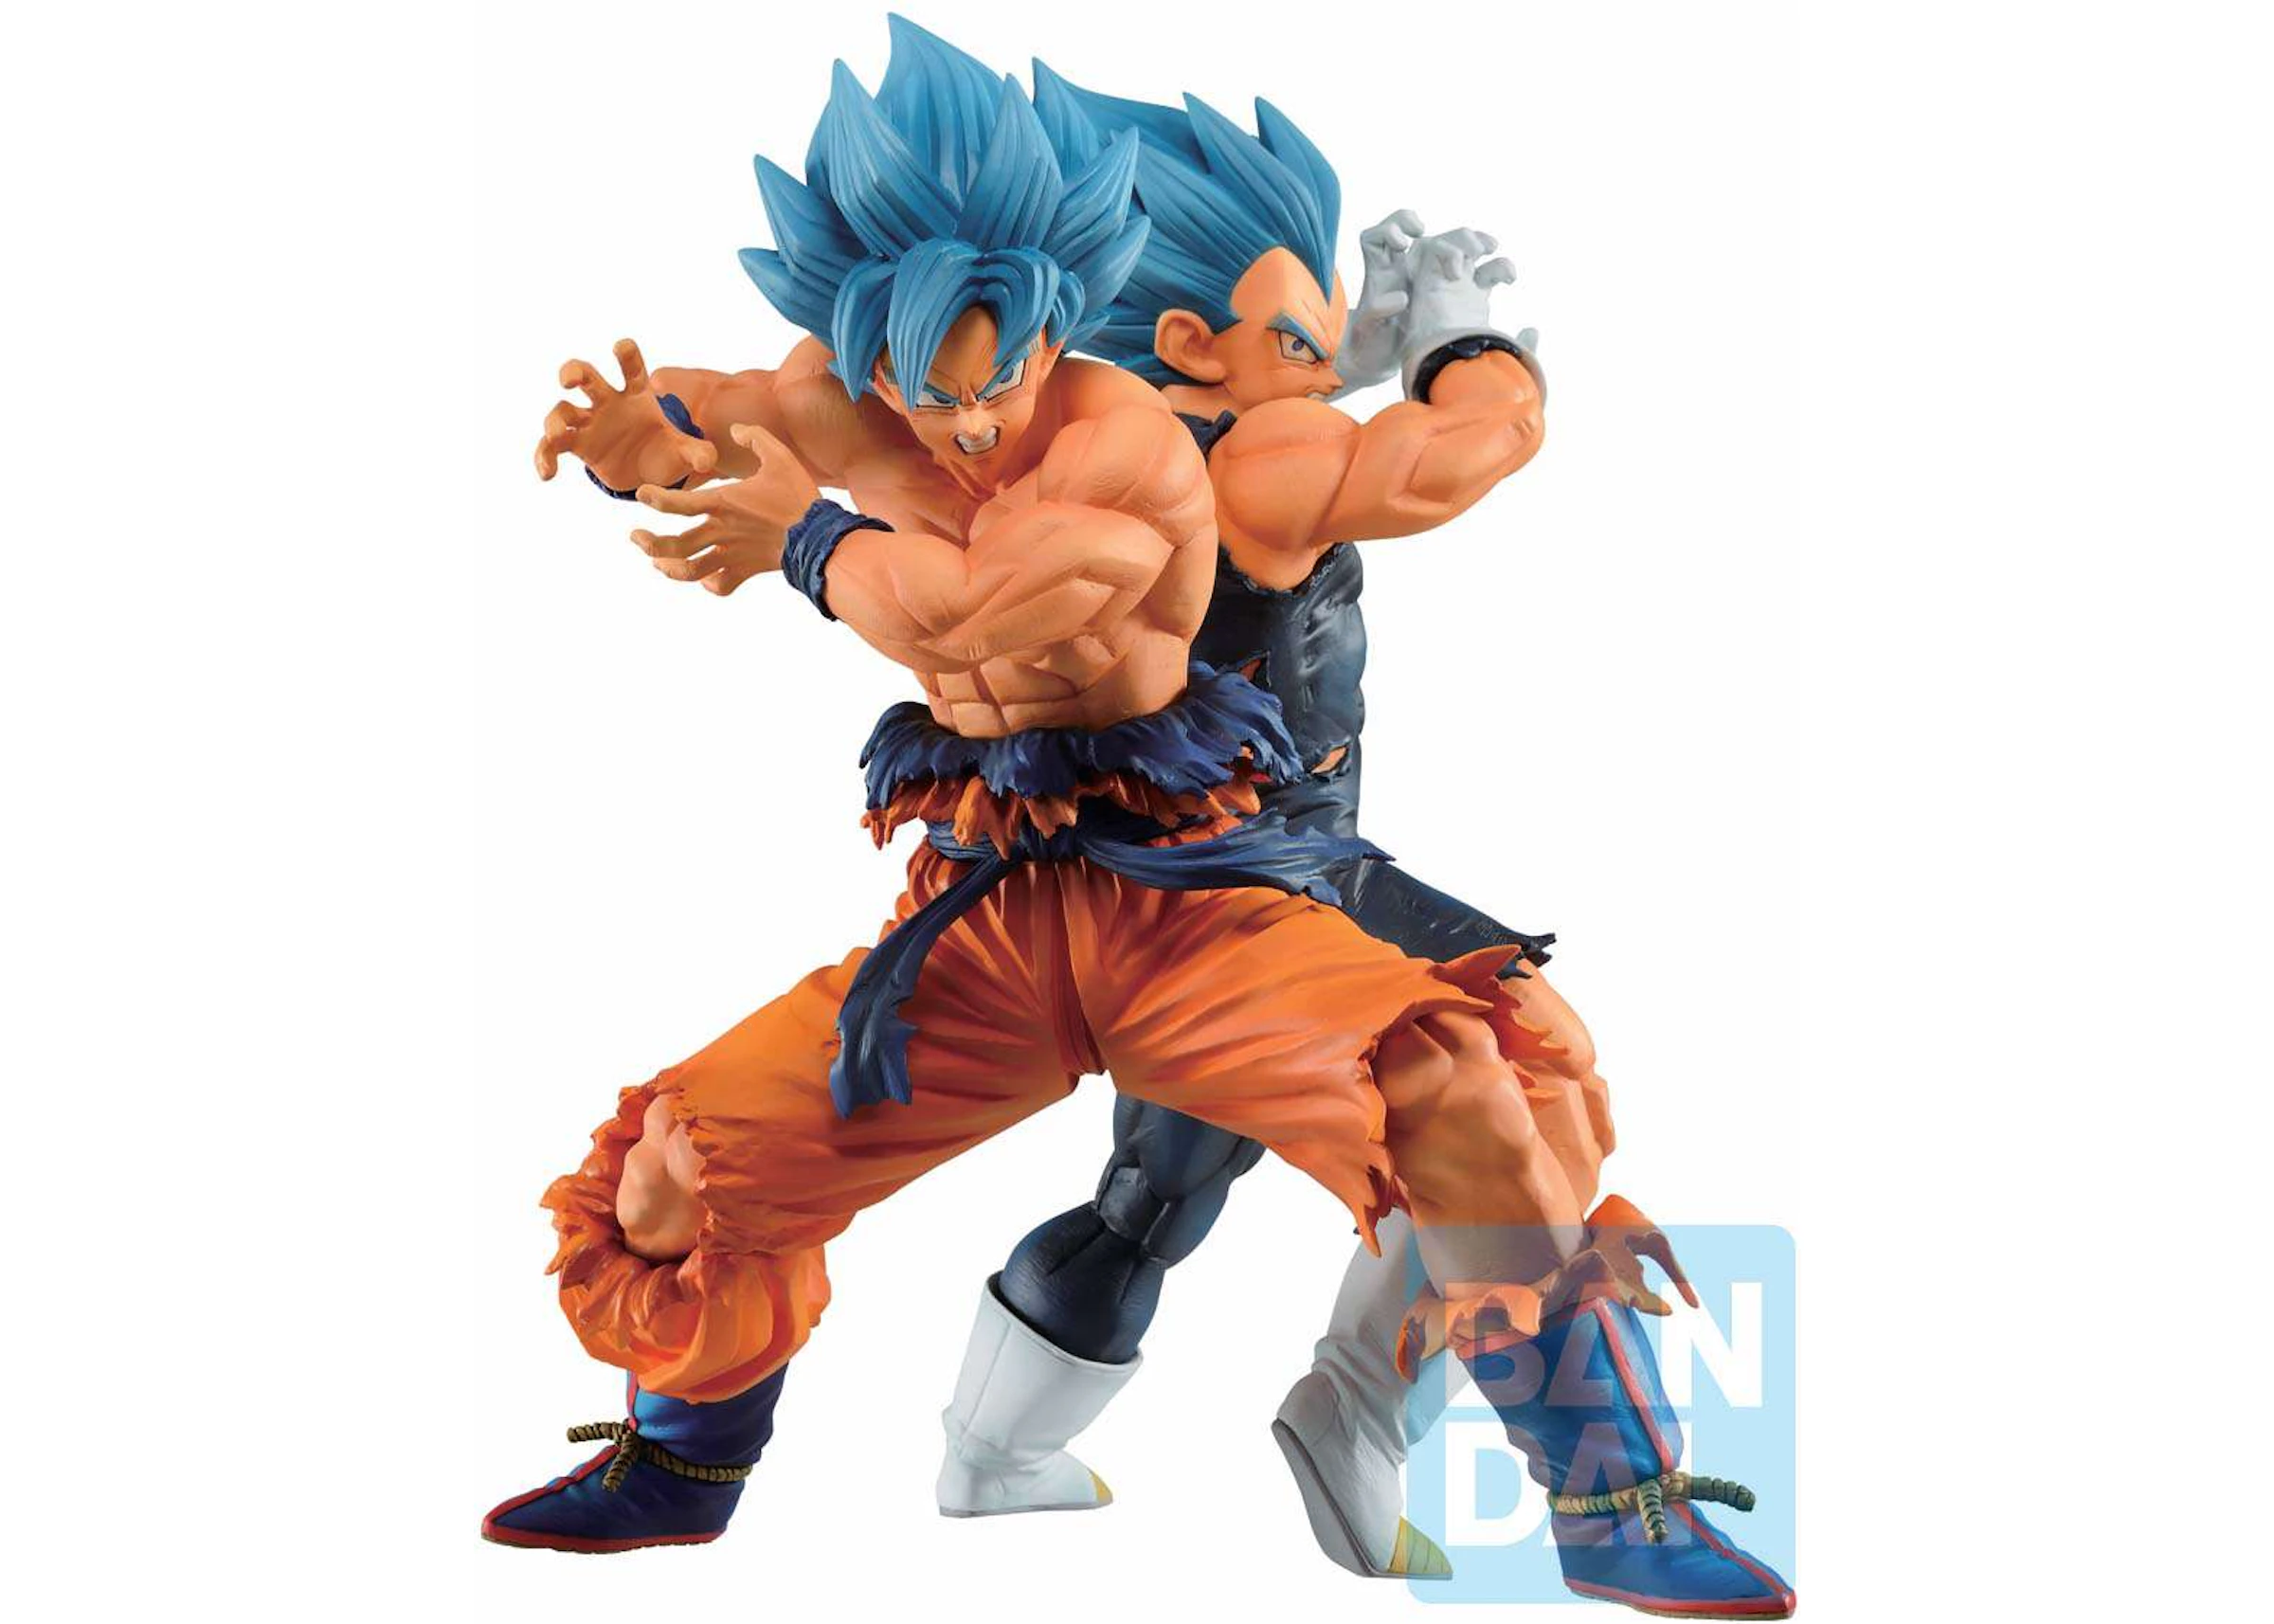 Almacén Desear Asombro Bandai Japan Dragon Ball Ichiban Son Goku & Vegeta SSGSS Vs Omnibus Super  Collectible PVC Figure - ES